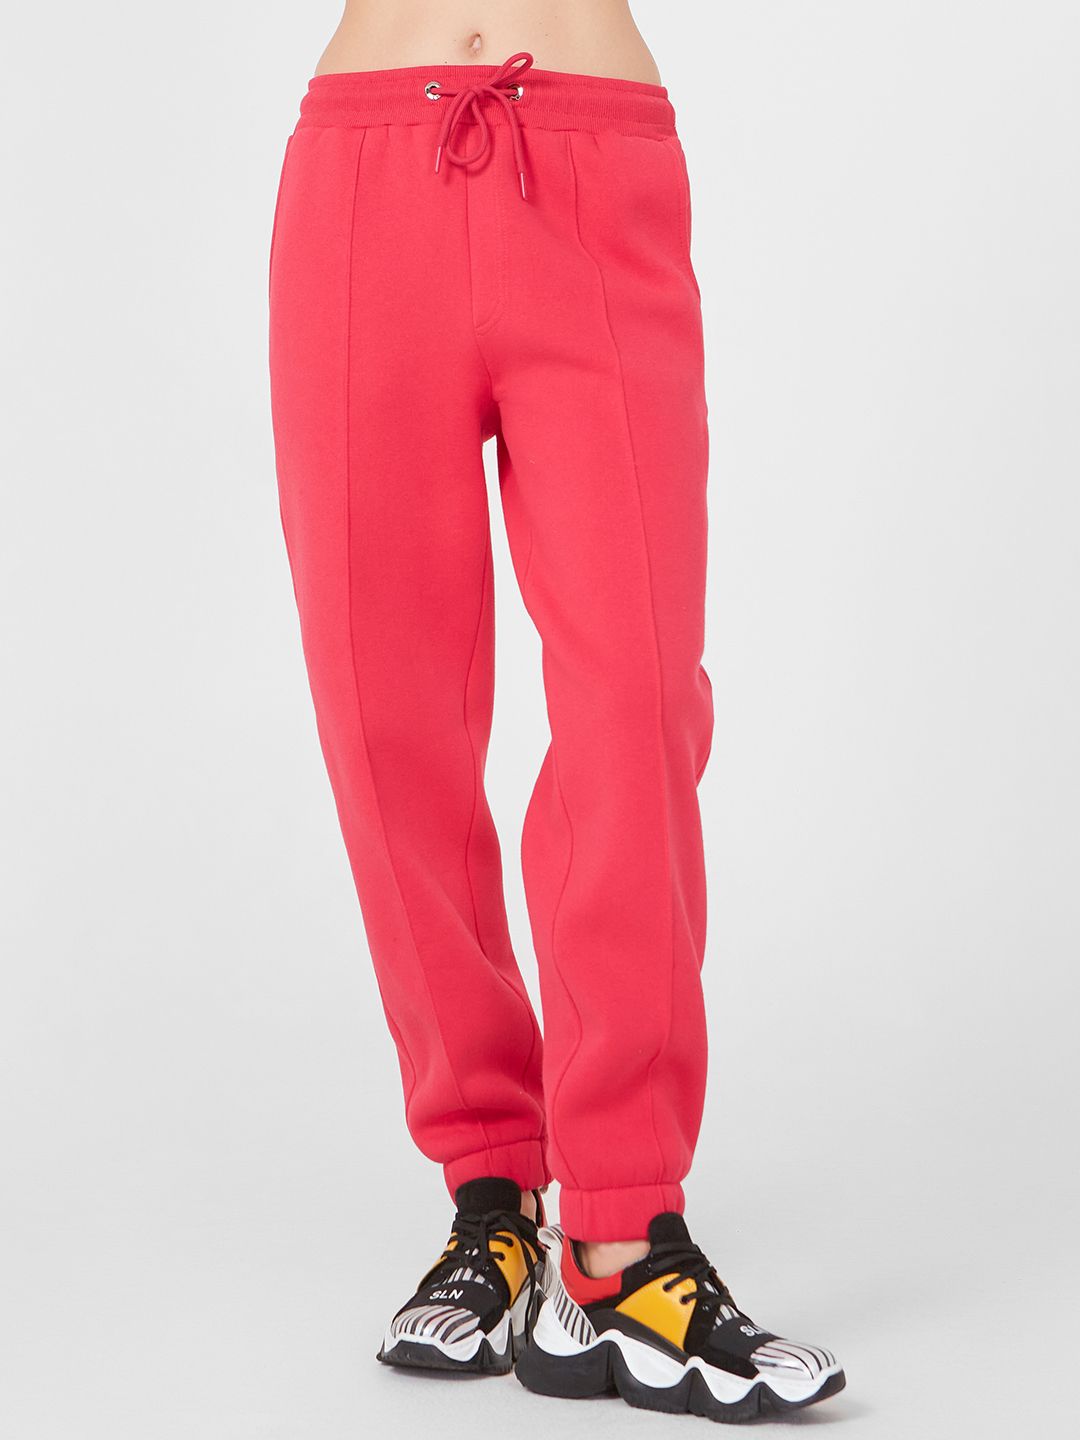 Спортивные брюки женские Lo 18232015 розовые 46 RU